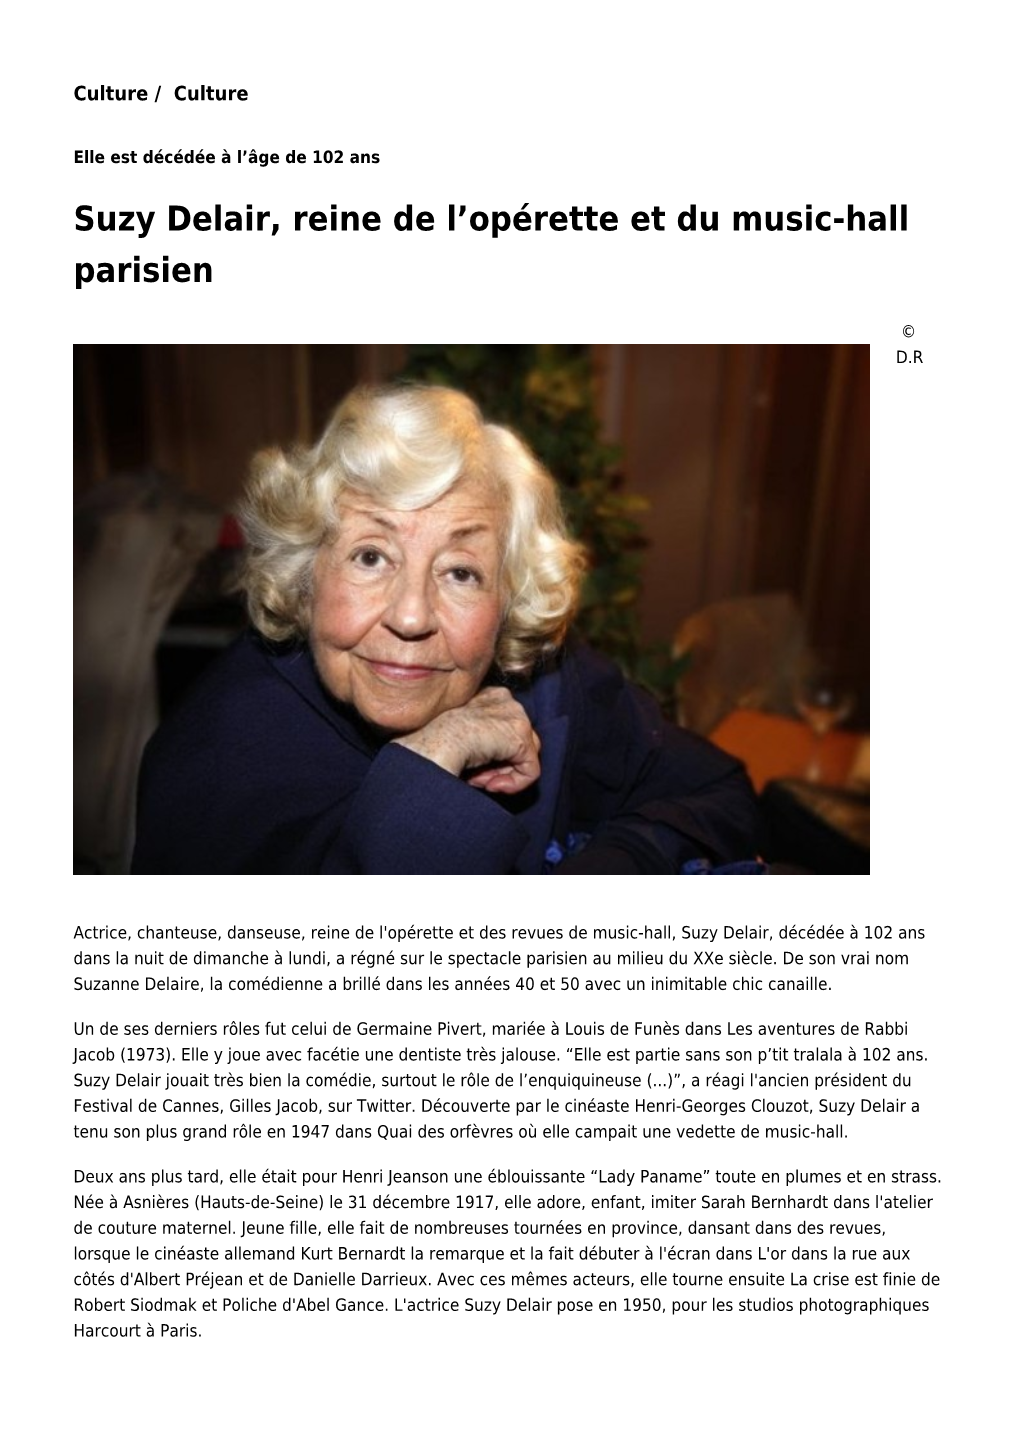 Suzy Delair, Reine De L'opérette Et Du Music-Hall Parisien